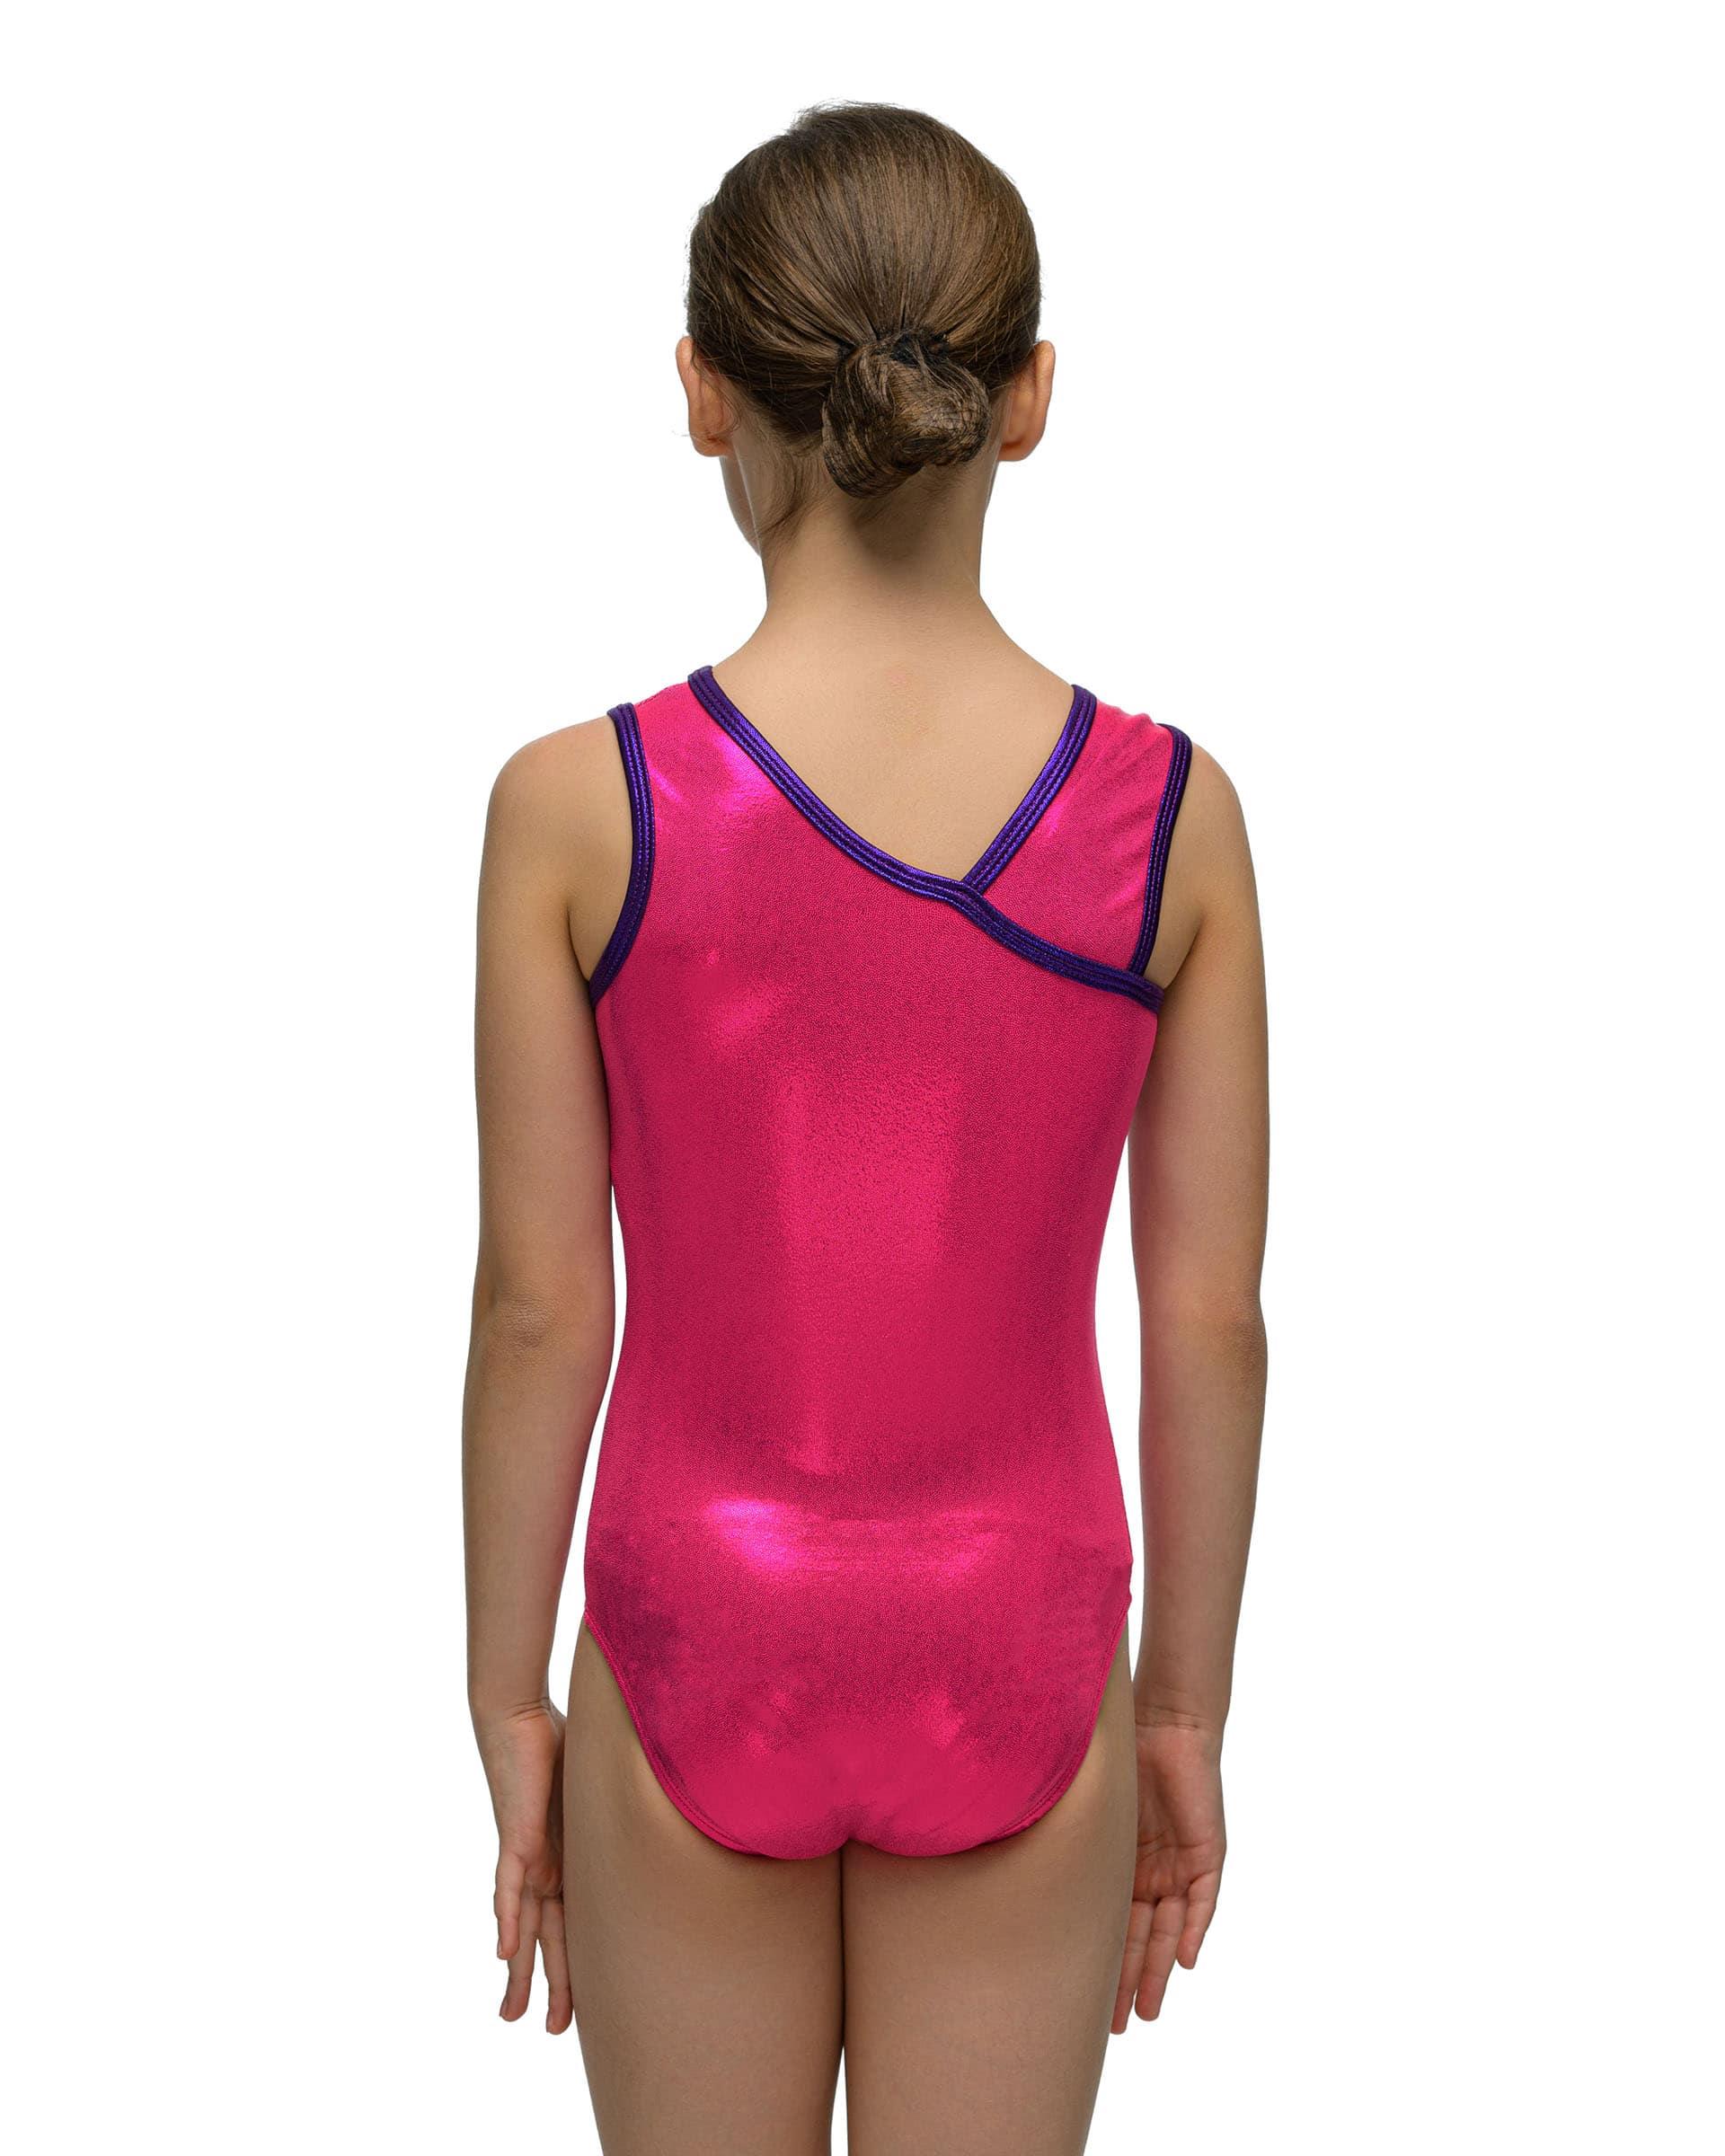 Купальник женский для спортивной гимнастики Alpha Factor 5422 розовый с фиолетовым кантом без рукава